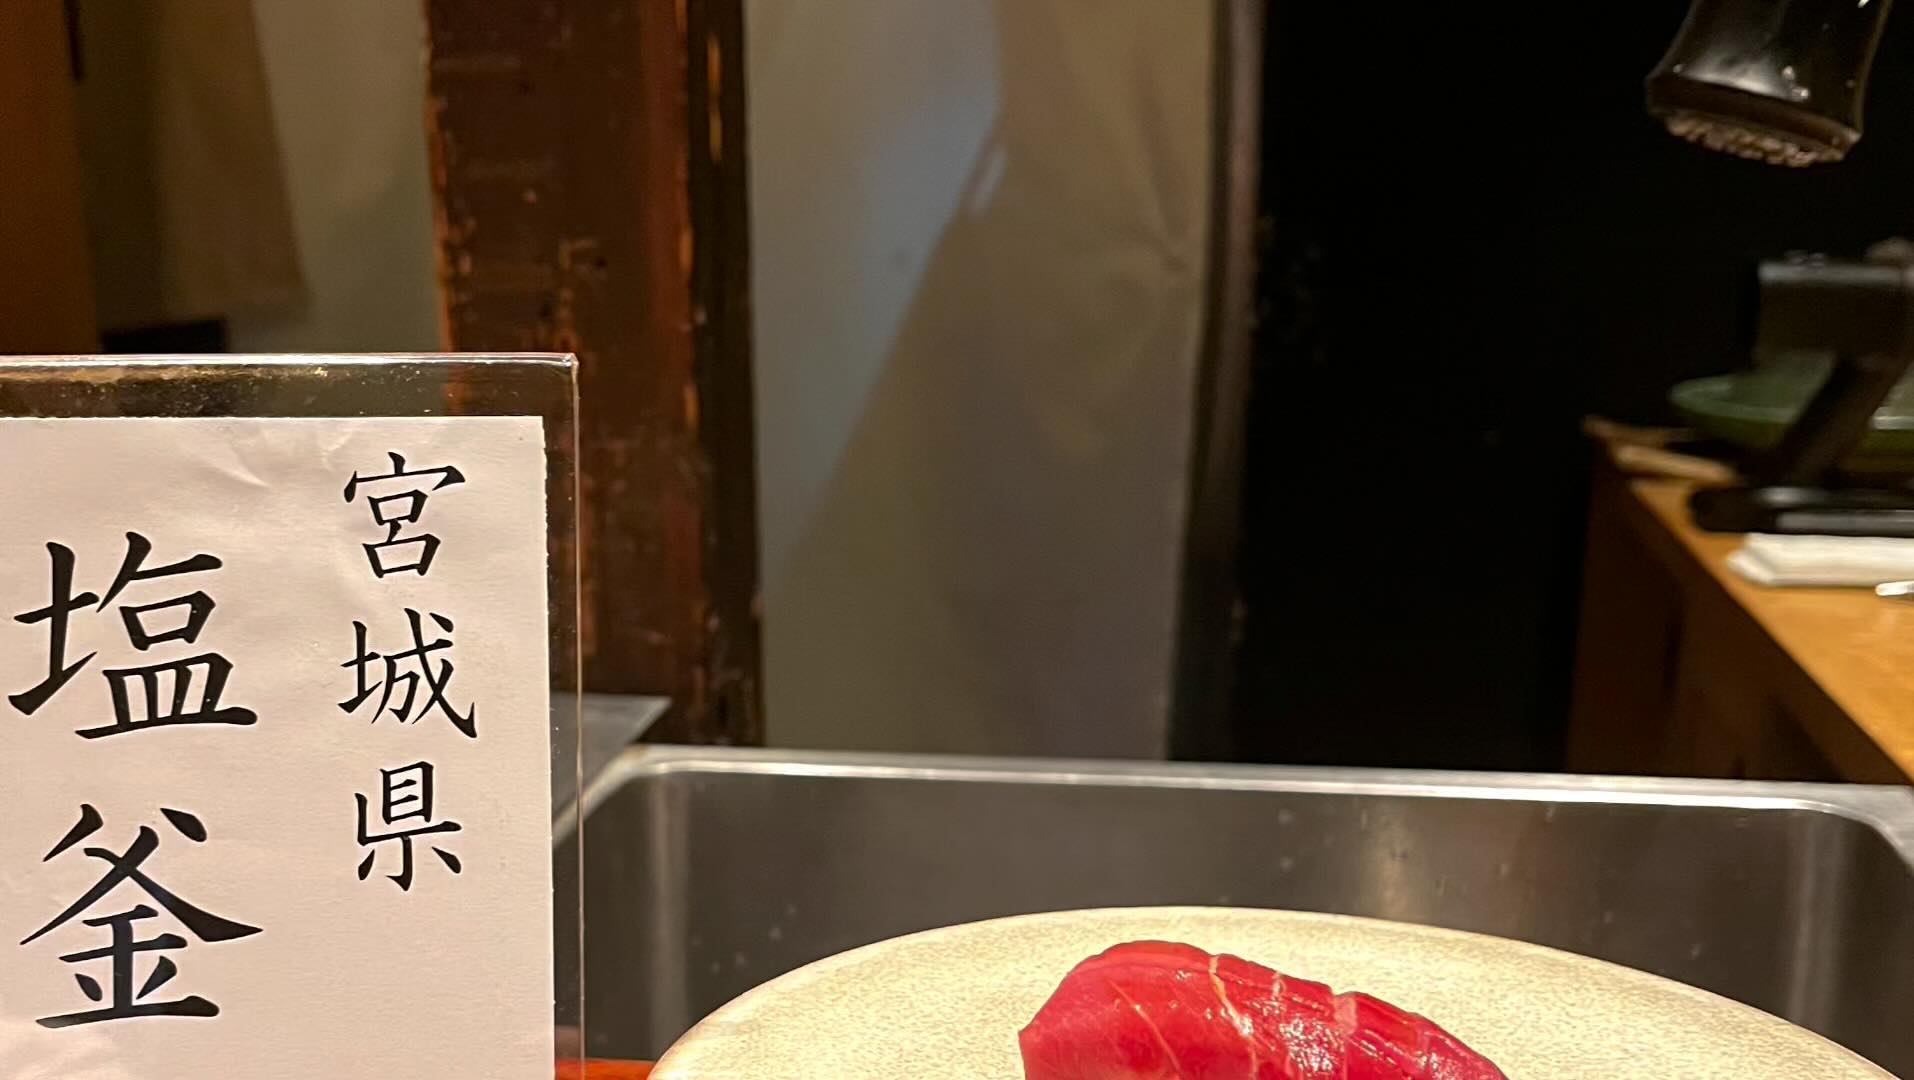 築地icc近くのお店紹介
お寿司　　鮨うらおにかい

お寿司屋さんでは珍しい女大将❣️
お寿司のお任せコースはどれも絶品です。
何よりカウンターで食べる醍醐味、
のお寿司。鯵を目の前で燻製にしてくれたり、海老天の巻物、名物のマグロなど、本当にお寿司をいっぱい食べたい方には最高です。
ソムリエさんのワインコースもお寿司とワインが最高にマッチしてとても美味しいです！
皆様ぜひ、練習のあとに行ってみて下さい。